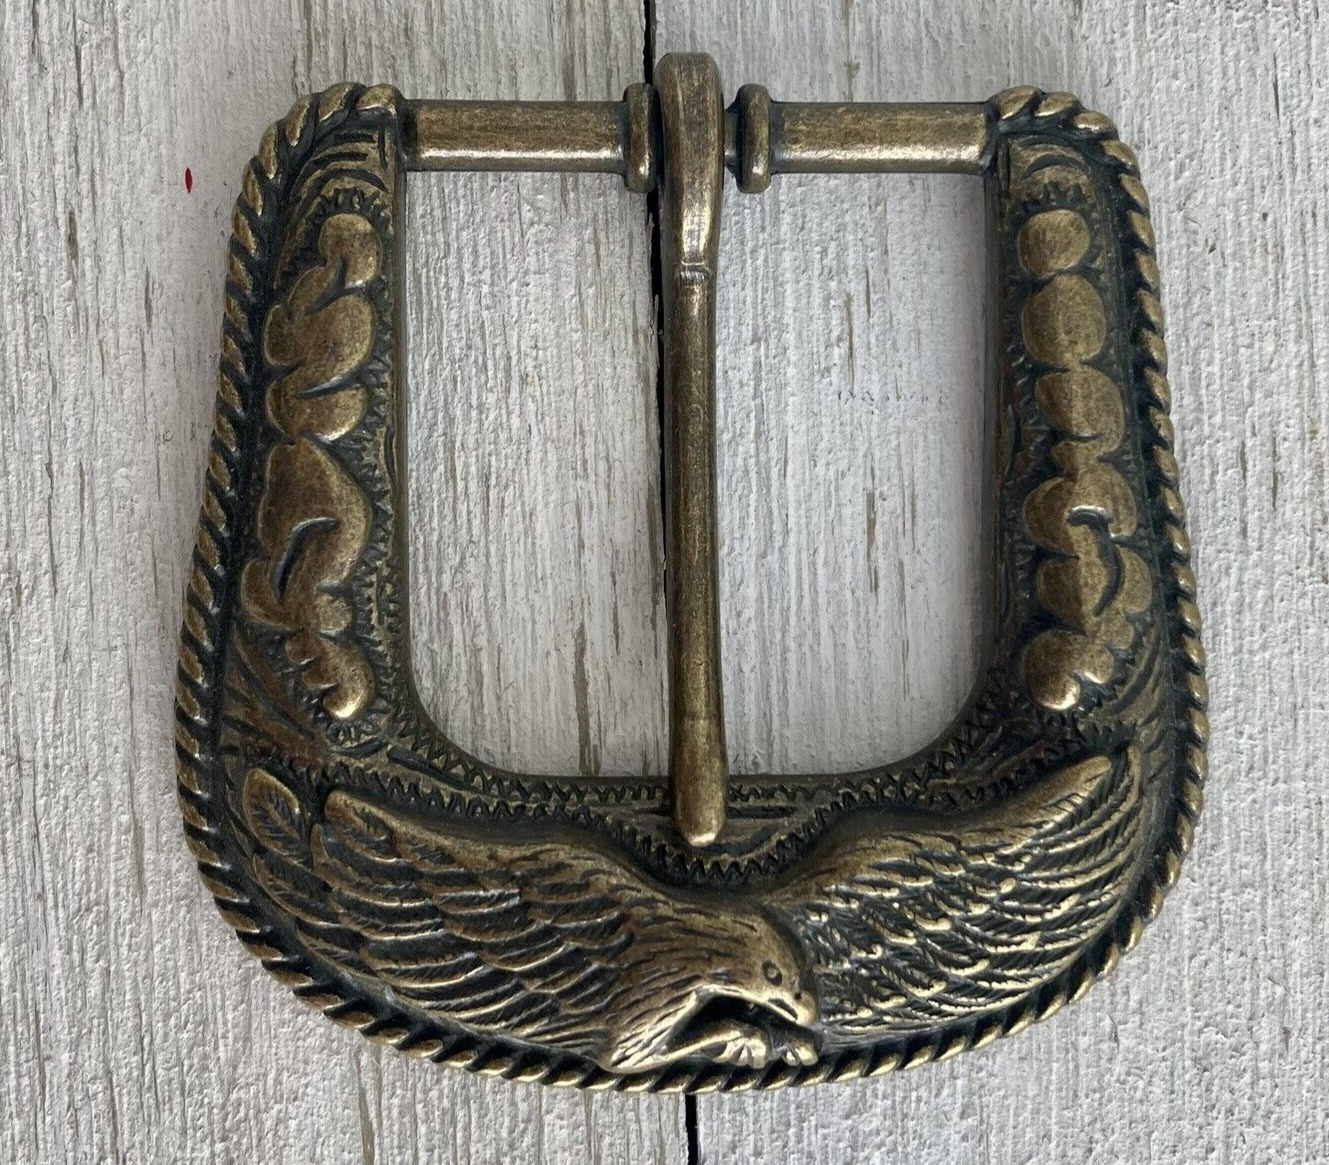 Unique Vintage Western Metal Belt Buckle Bronze Eagle Design